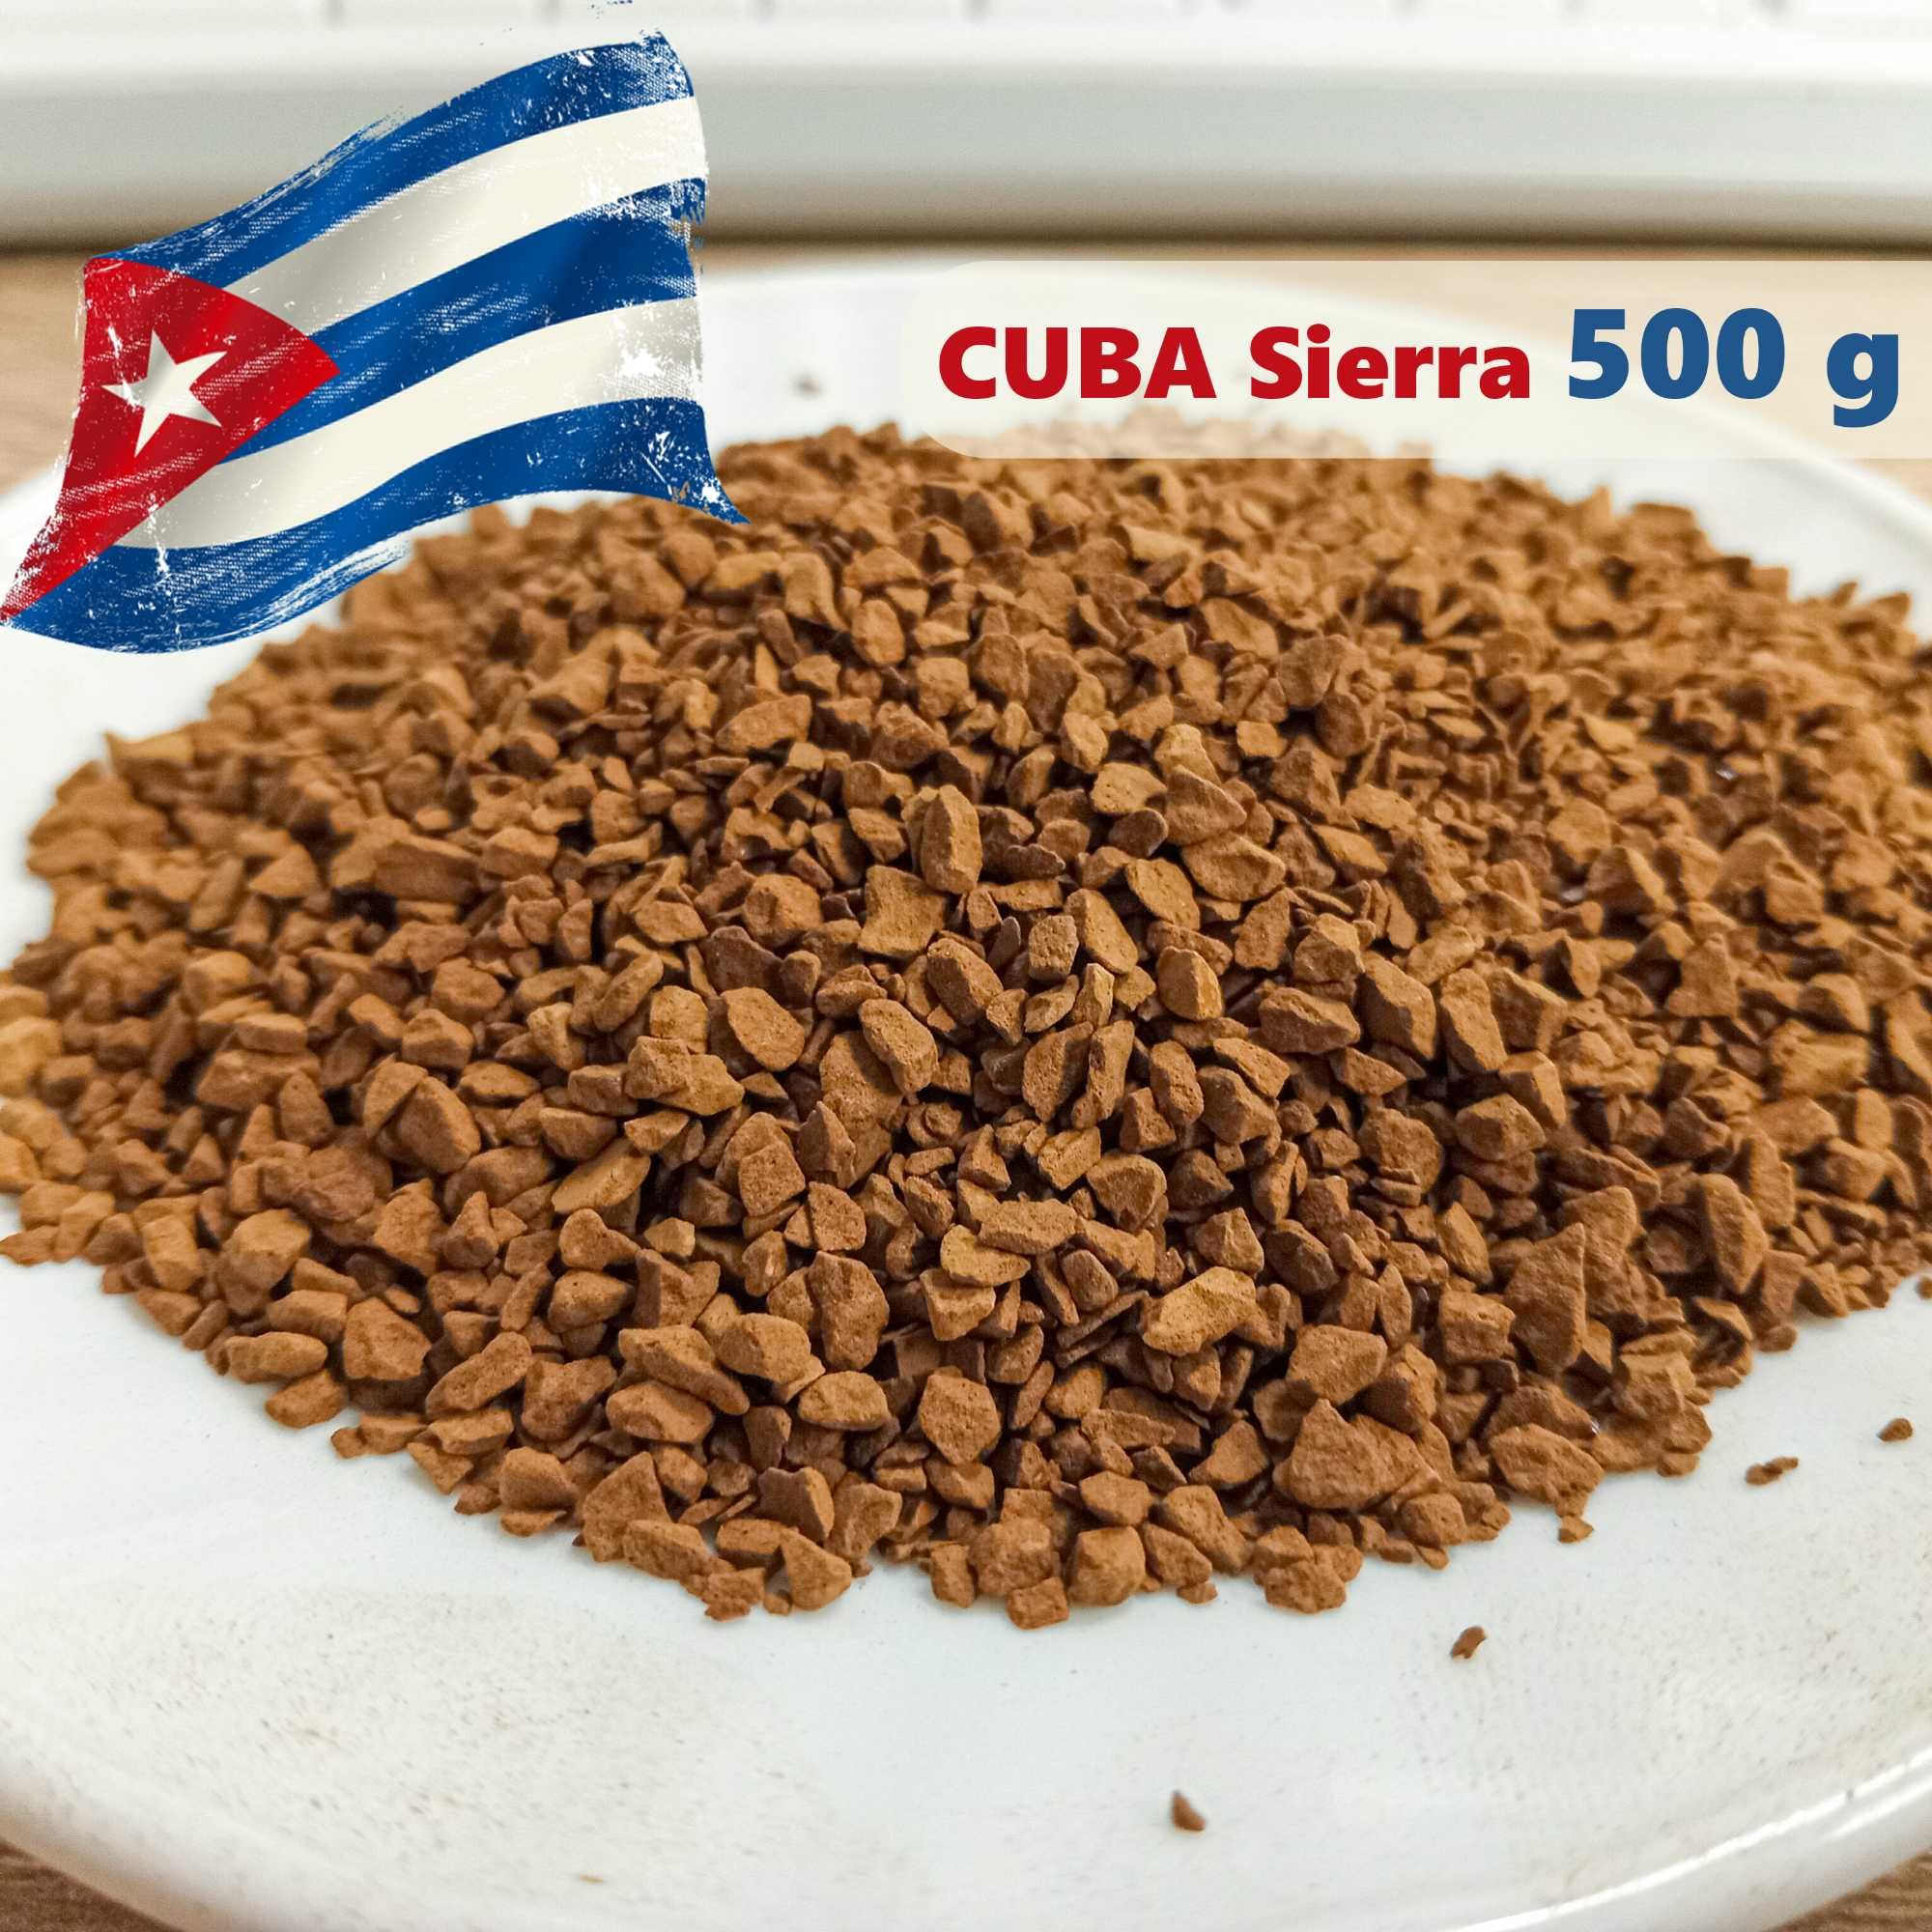 Кофе растворимый Куба Sierra на вес 500 g. ЛЮКС новинка!